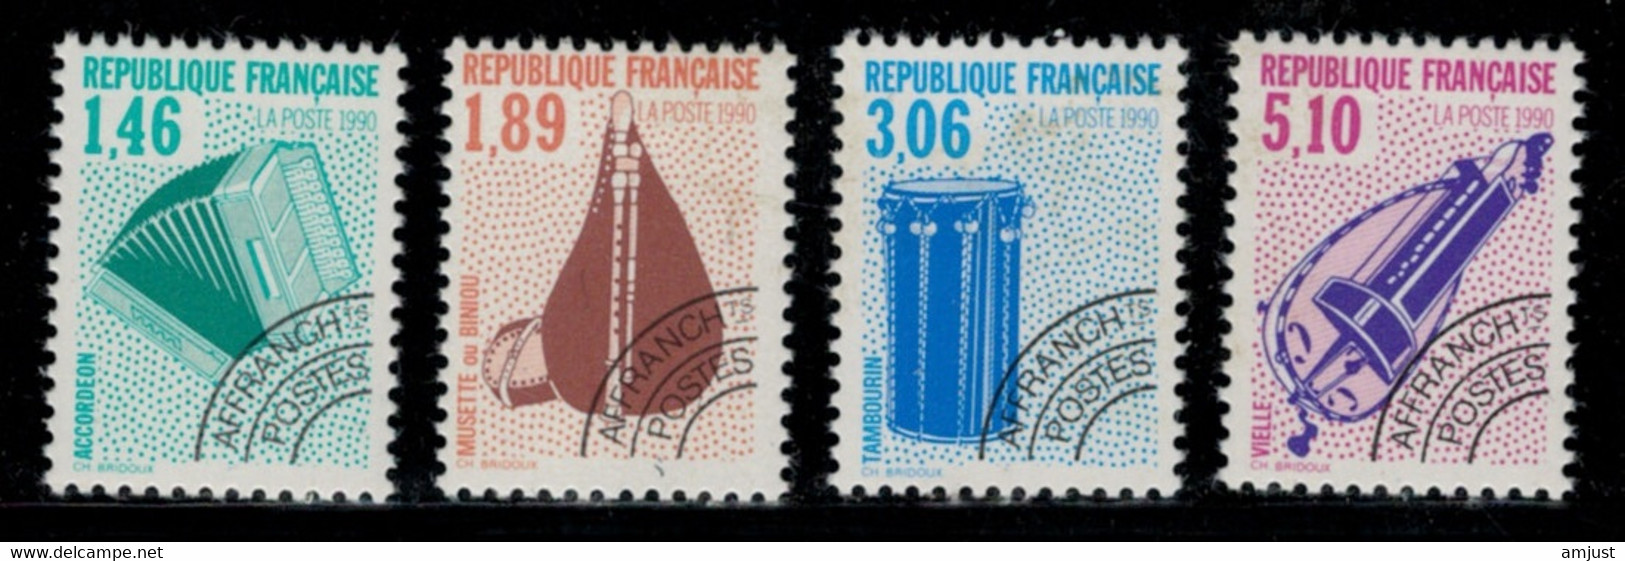 France // Préoblitérés // 1990 // Série Timbres Préoblitérés Neufs** MNH No. Y&T 206 à 209 - 1989-2008